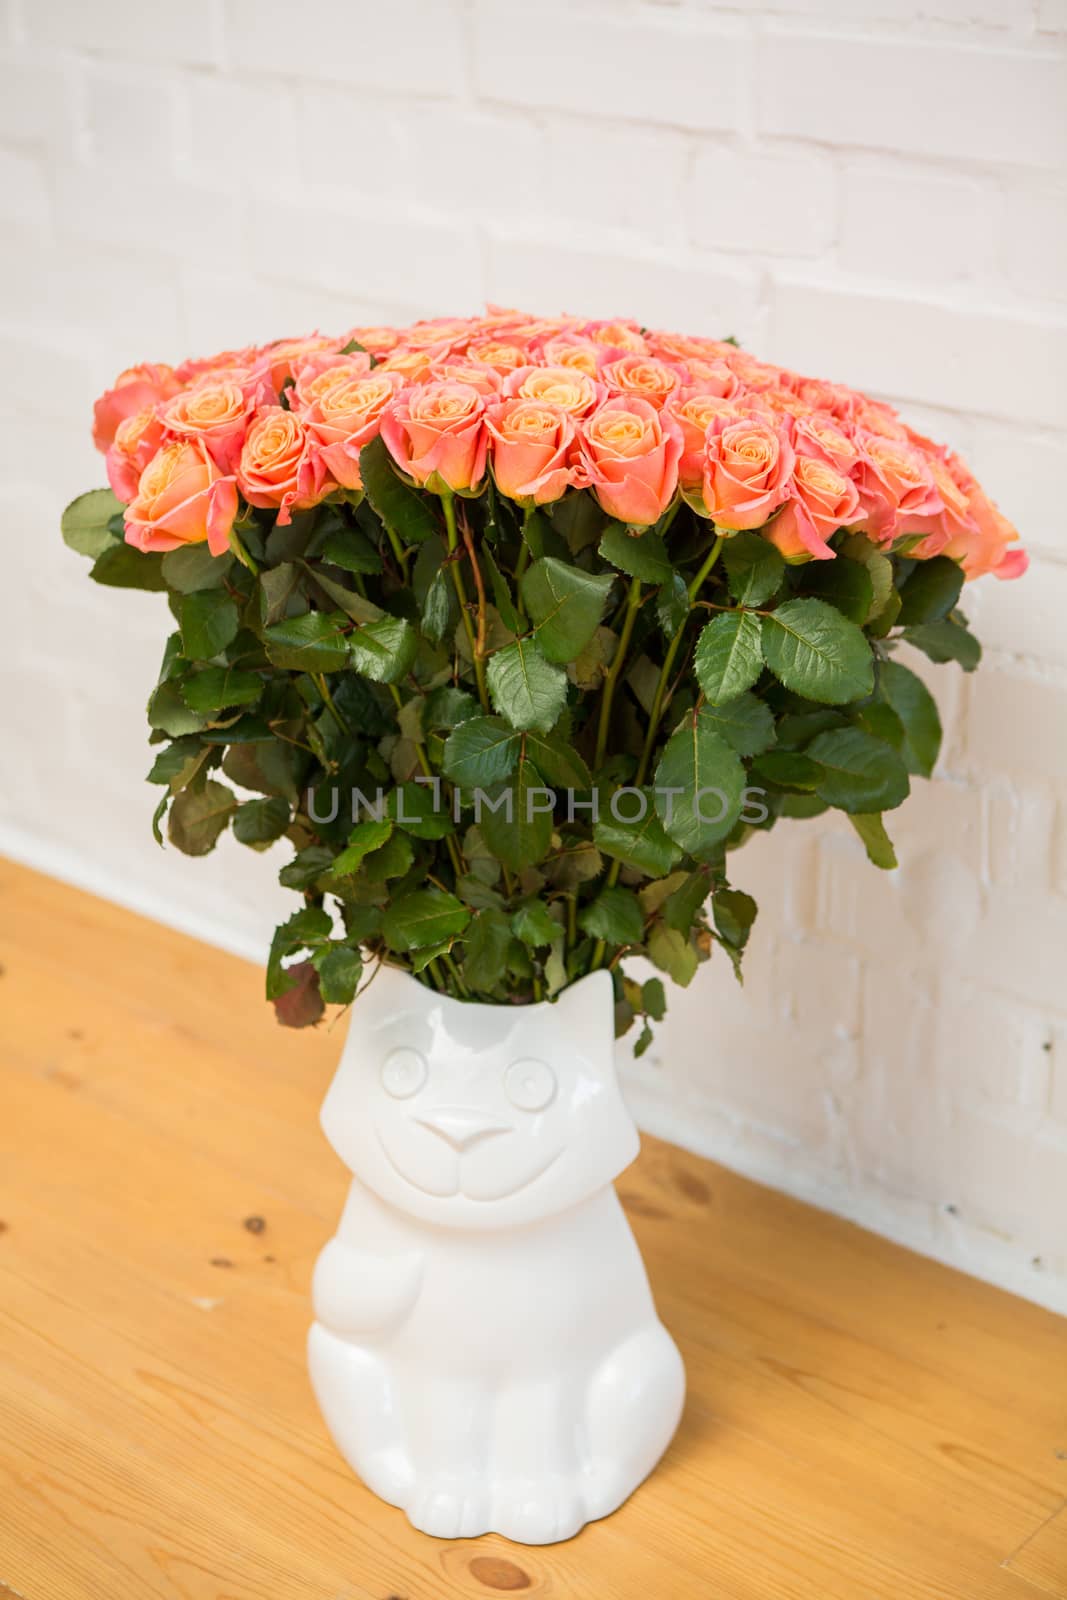 beautiful roses in a vase-cat by sarymsakov